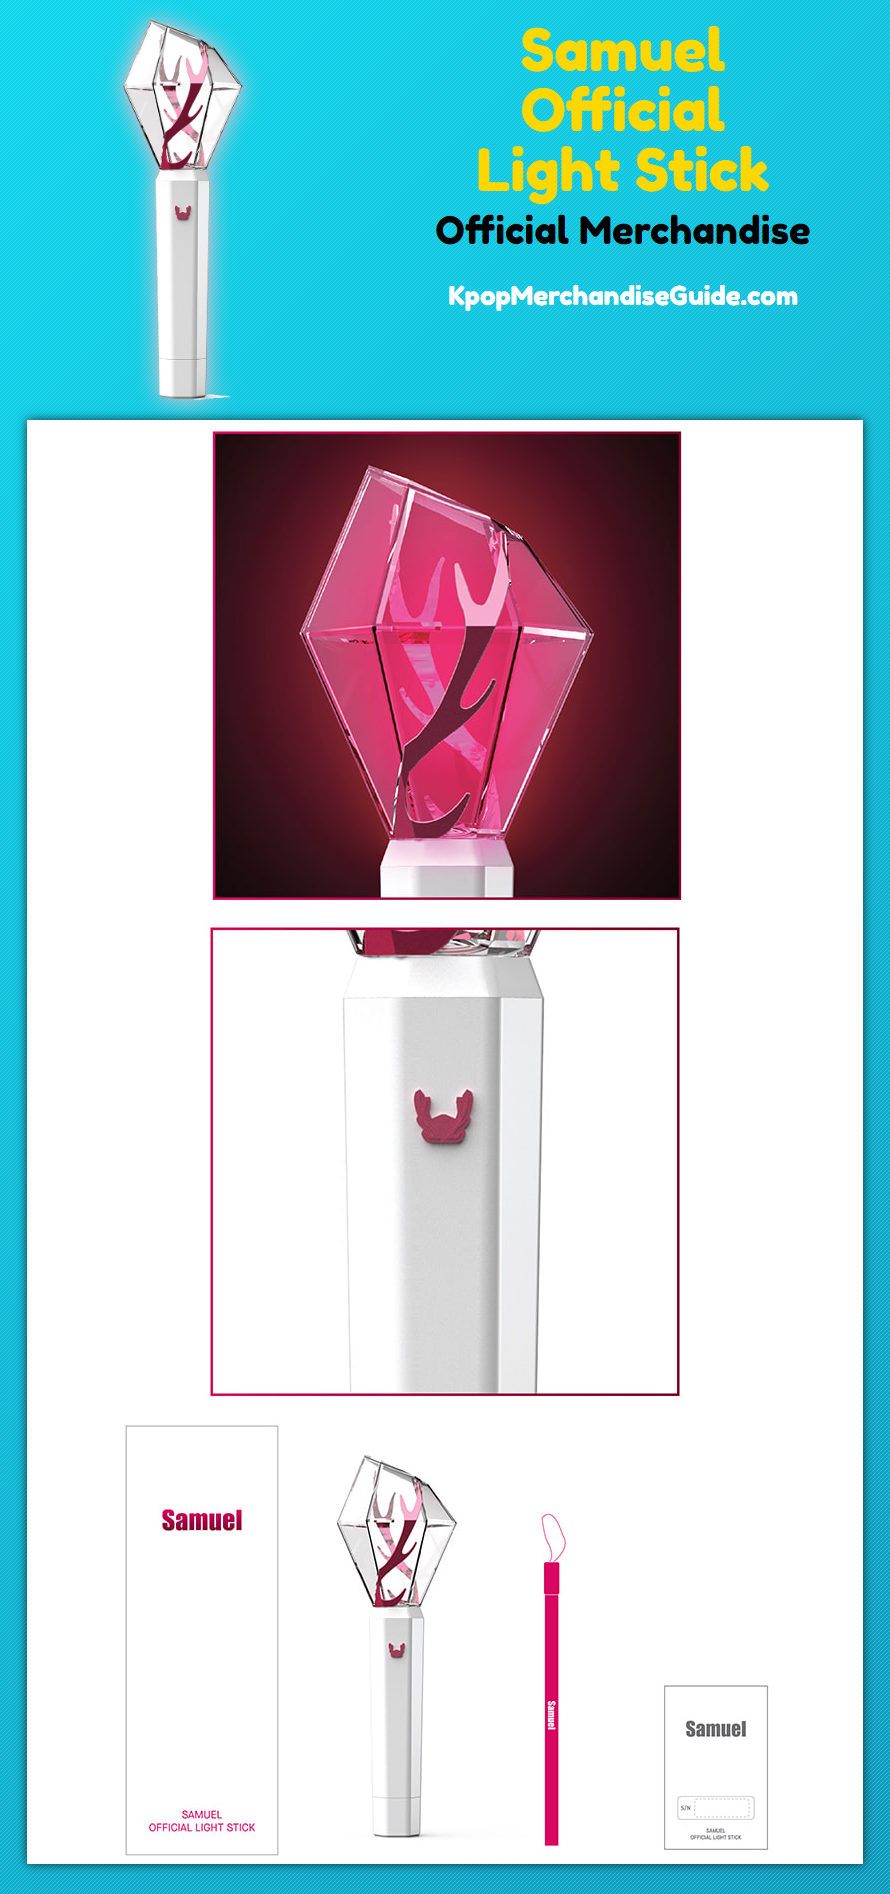 Kim Samuel Merchandise - The Official Light Stick